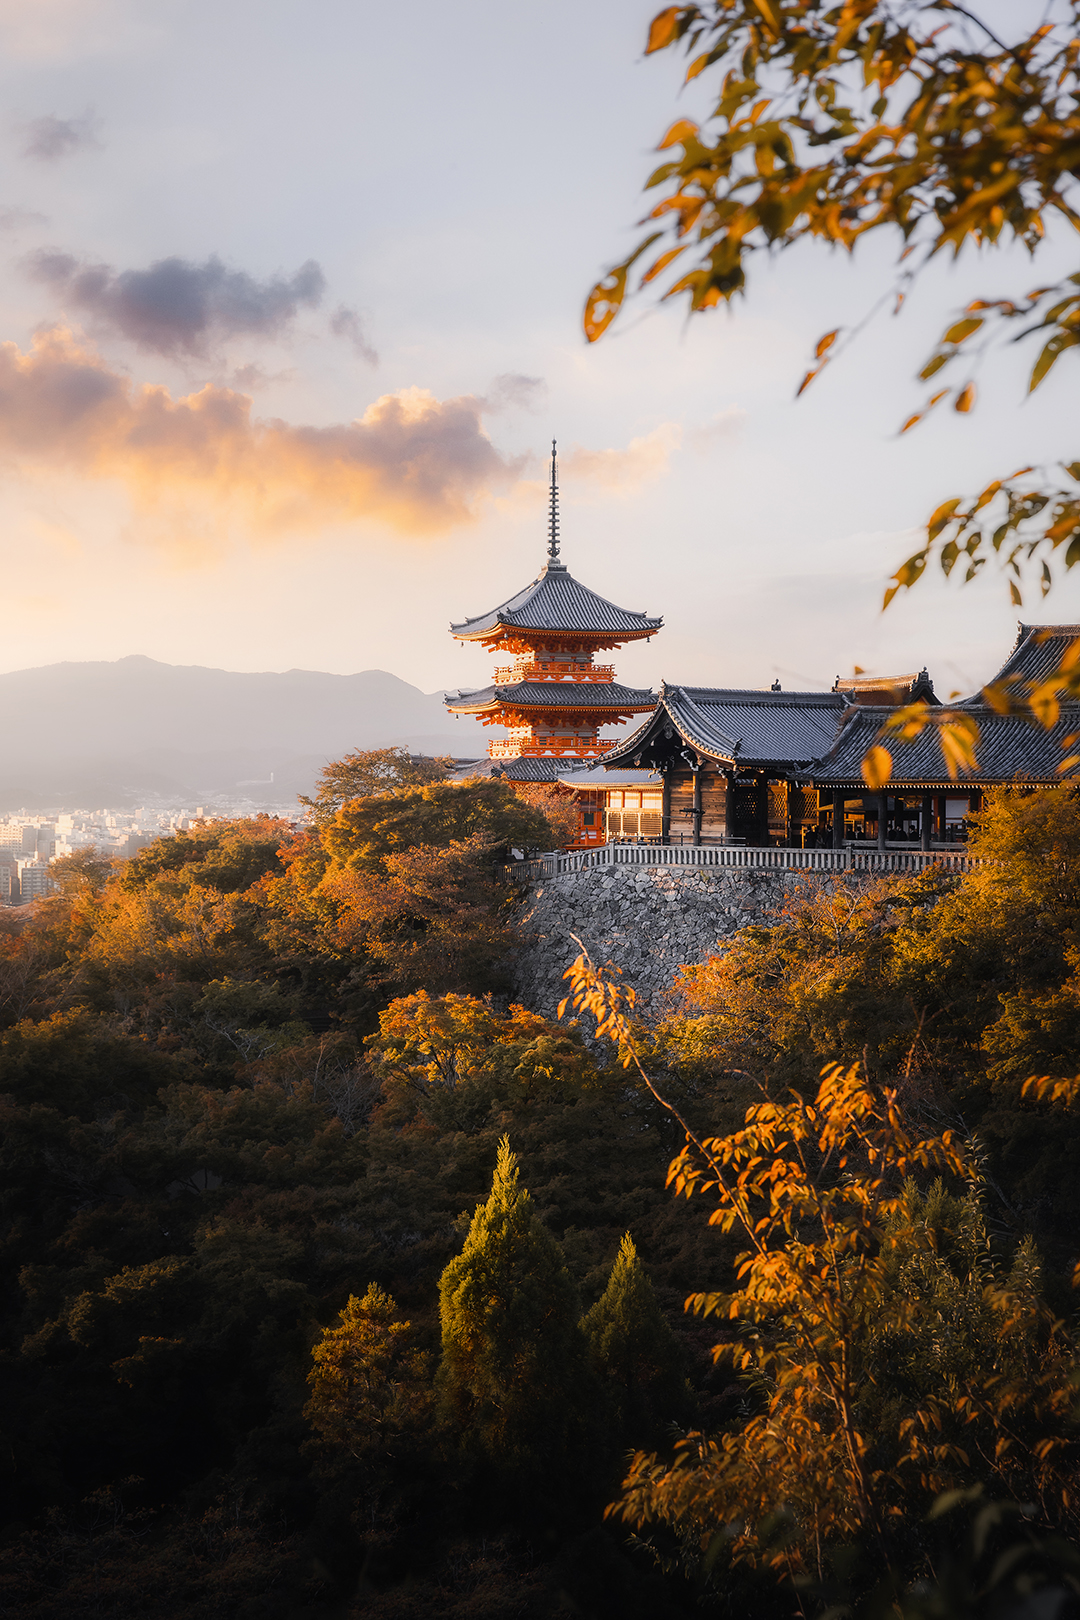 Kyoto Kiyomizu-dera Three-Story Pagoda at Kiyomizu-dera